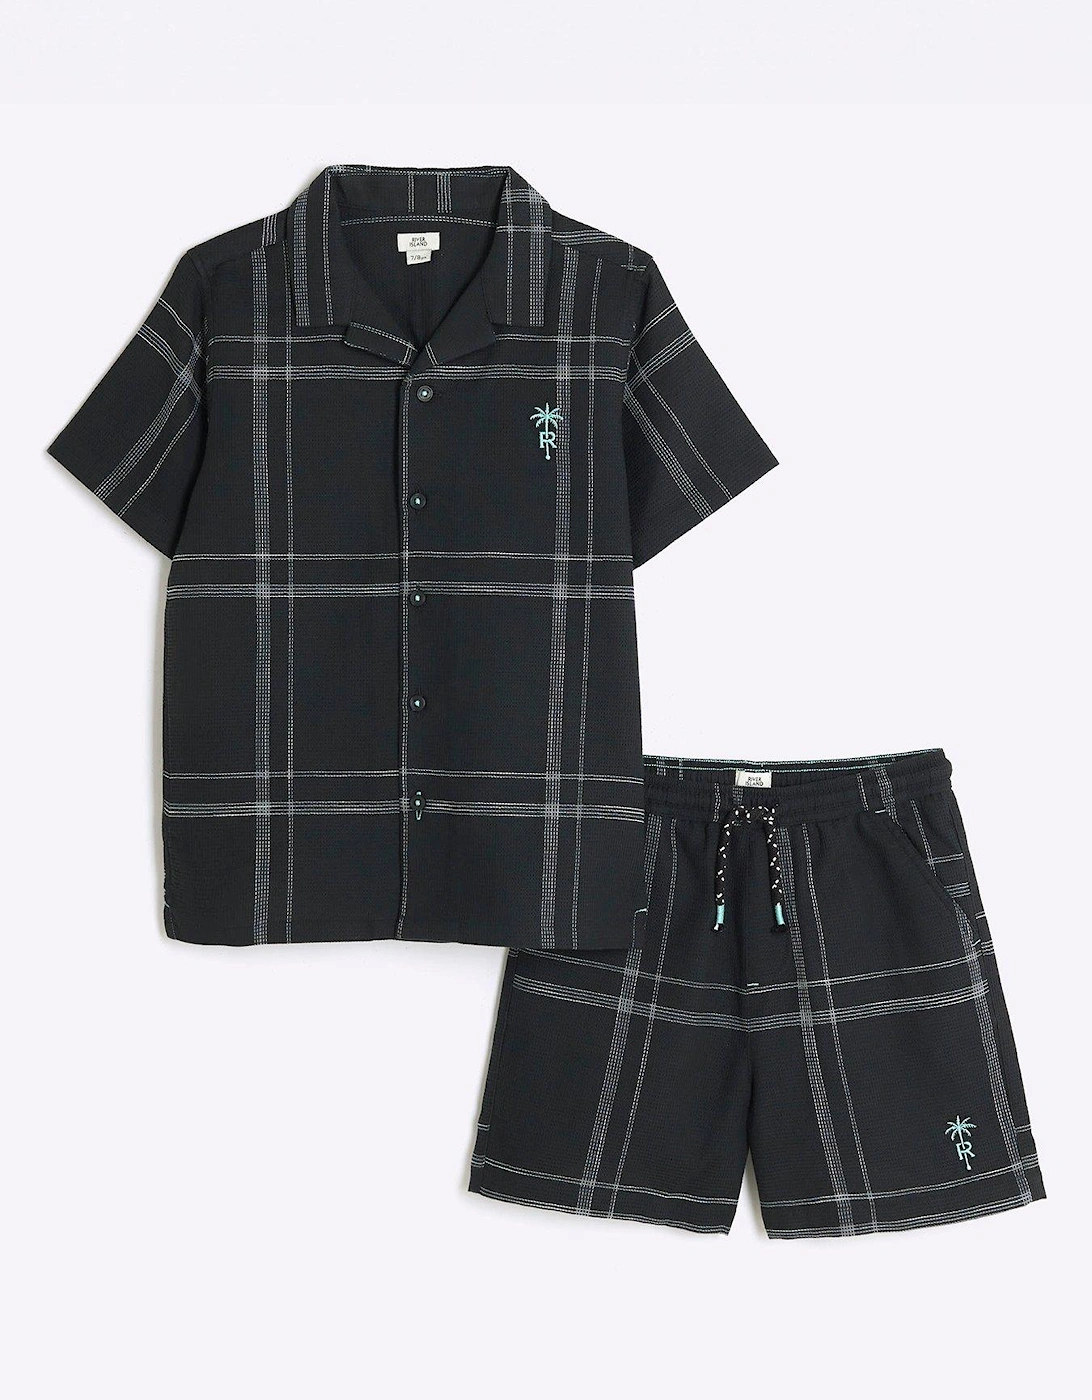 Boys Check Shirt and Shorts Set - Black, 3 of 2